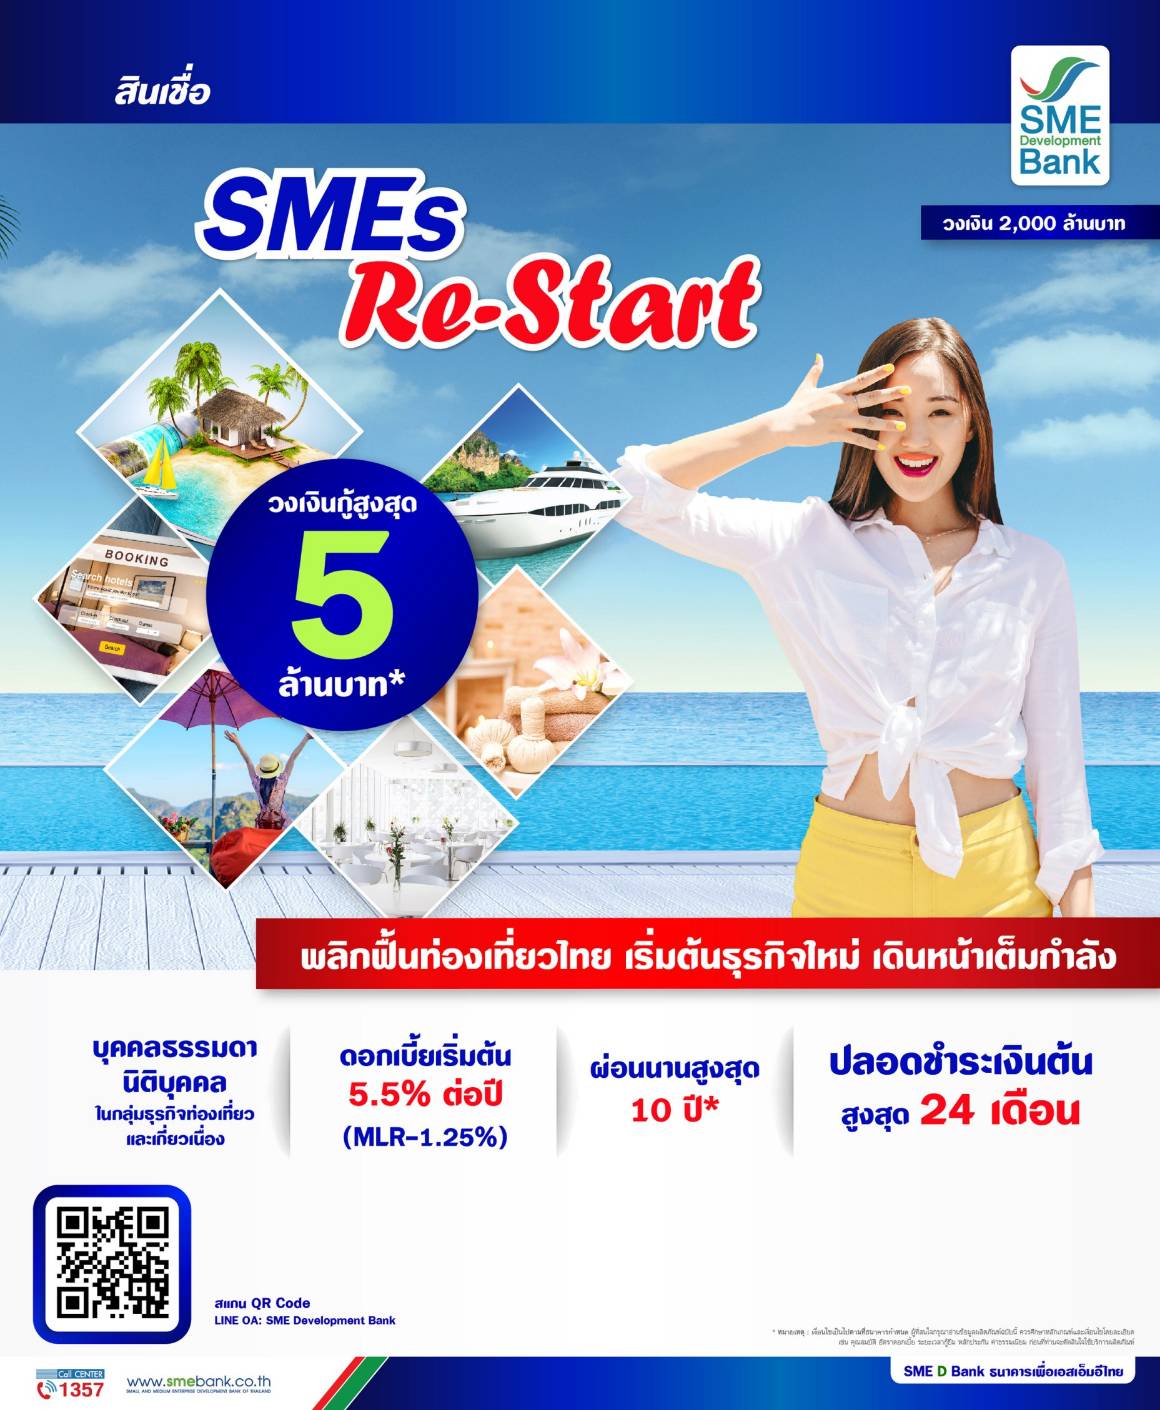 SME D Bank เปิดตัวสินเชื่อใหม่ 'SMEs Re-Start' สนับสนุนผู้ประกอบการธุรกิจท่องเที่ยว ดูรายละเอียดที่นี่